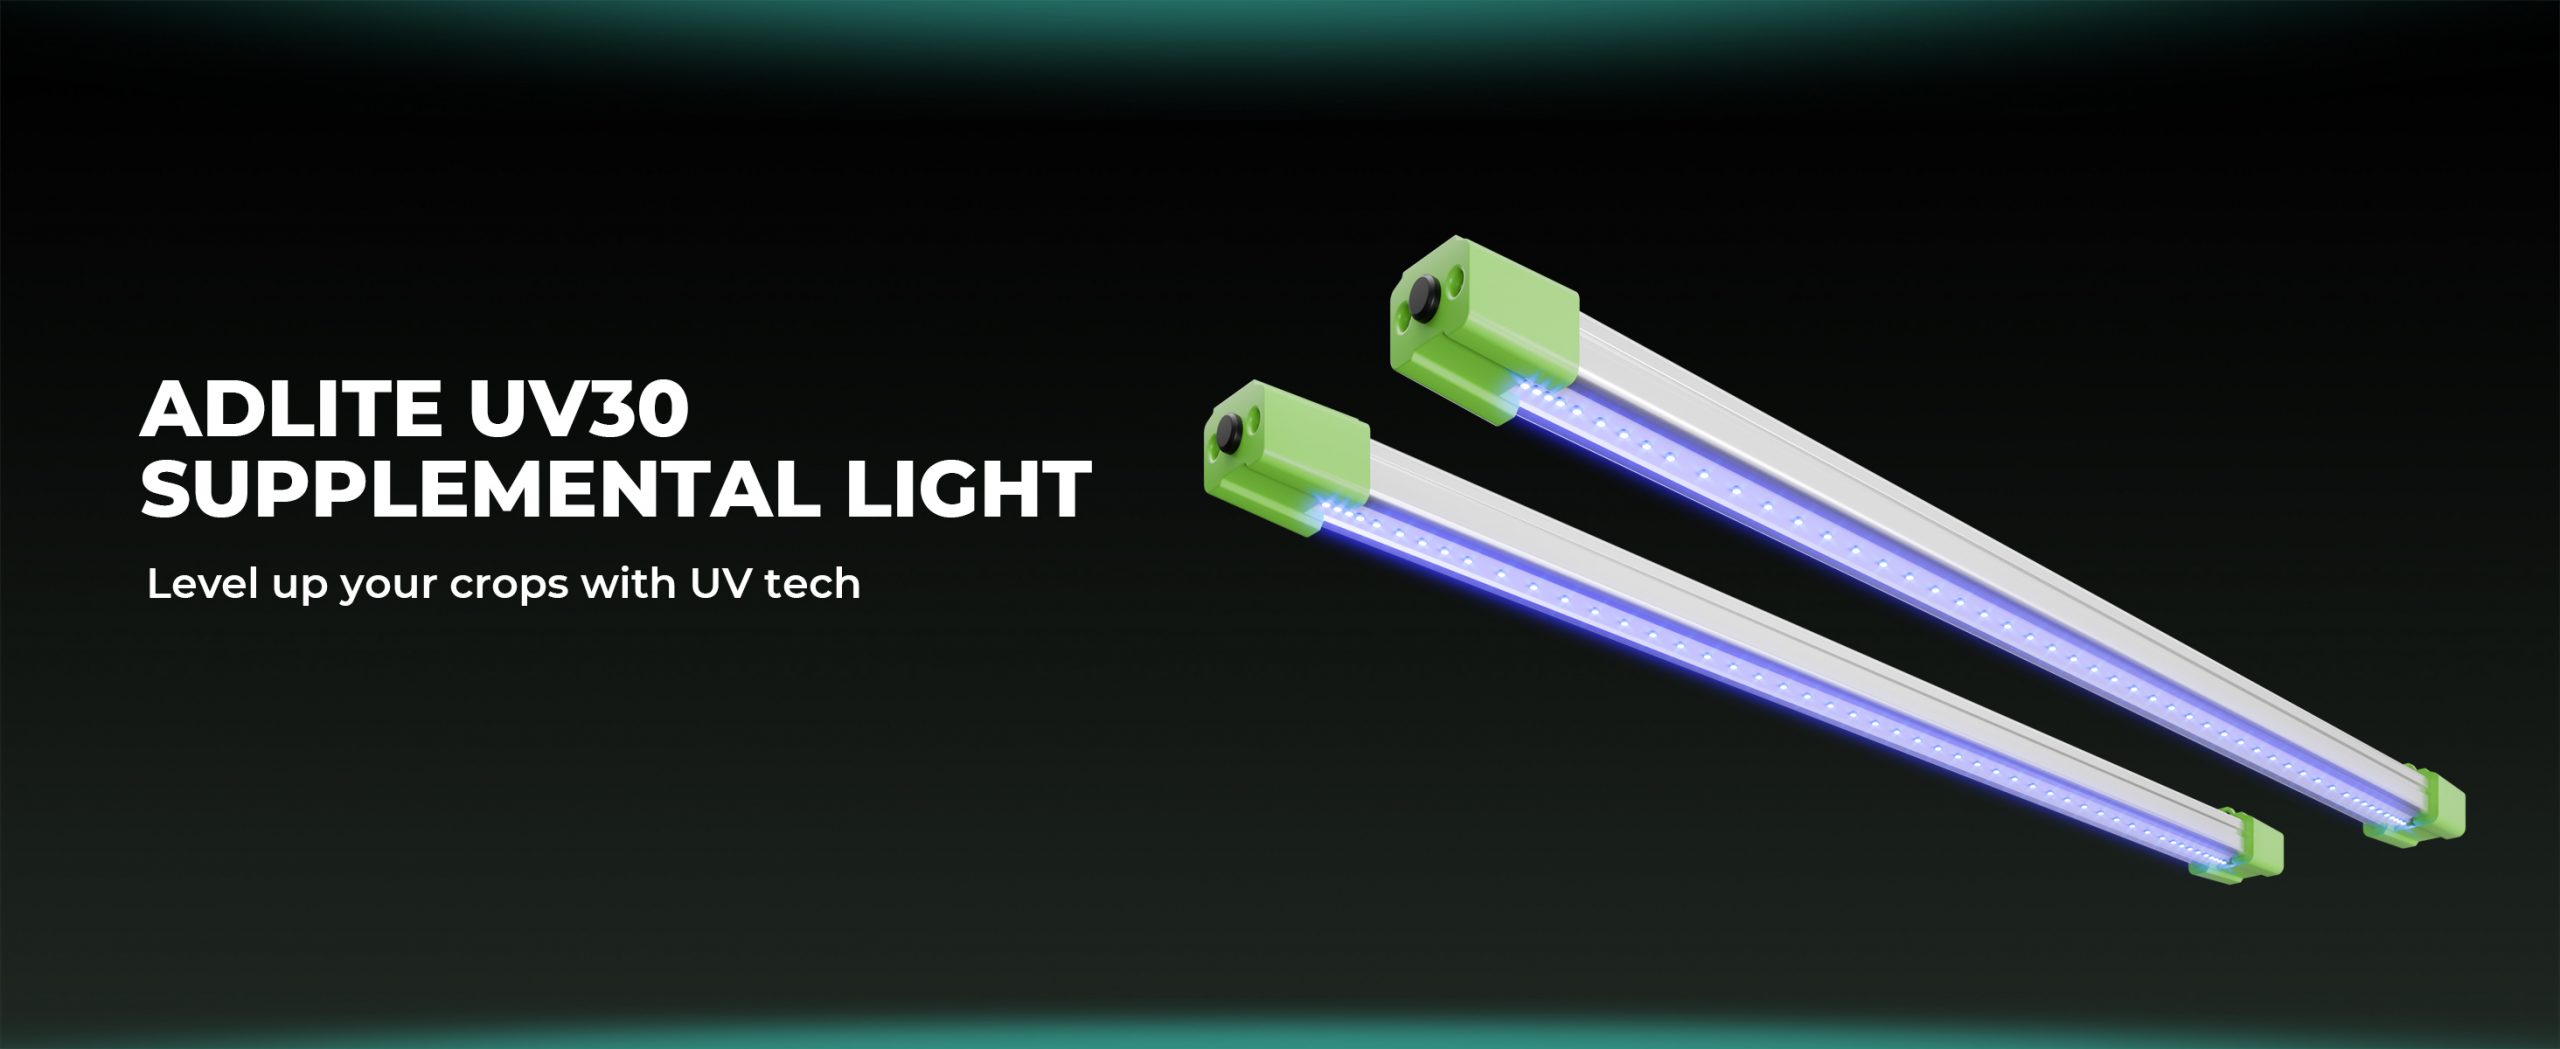 adlite uv30 supplemental led light